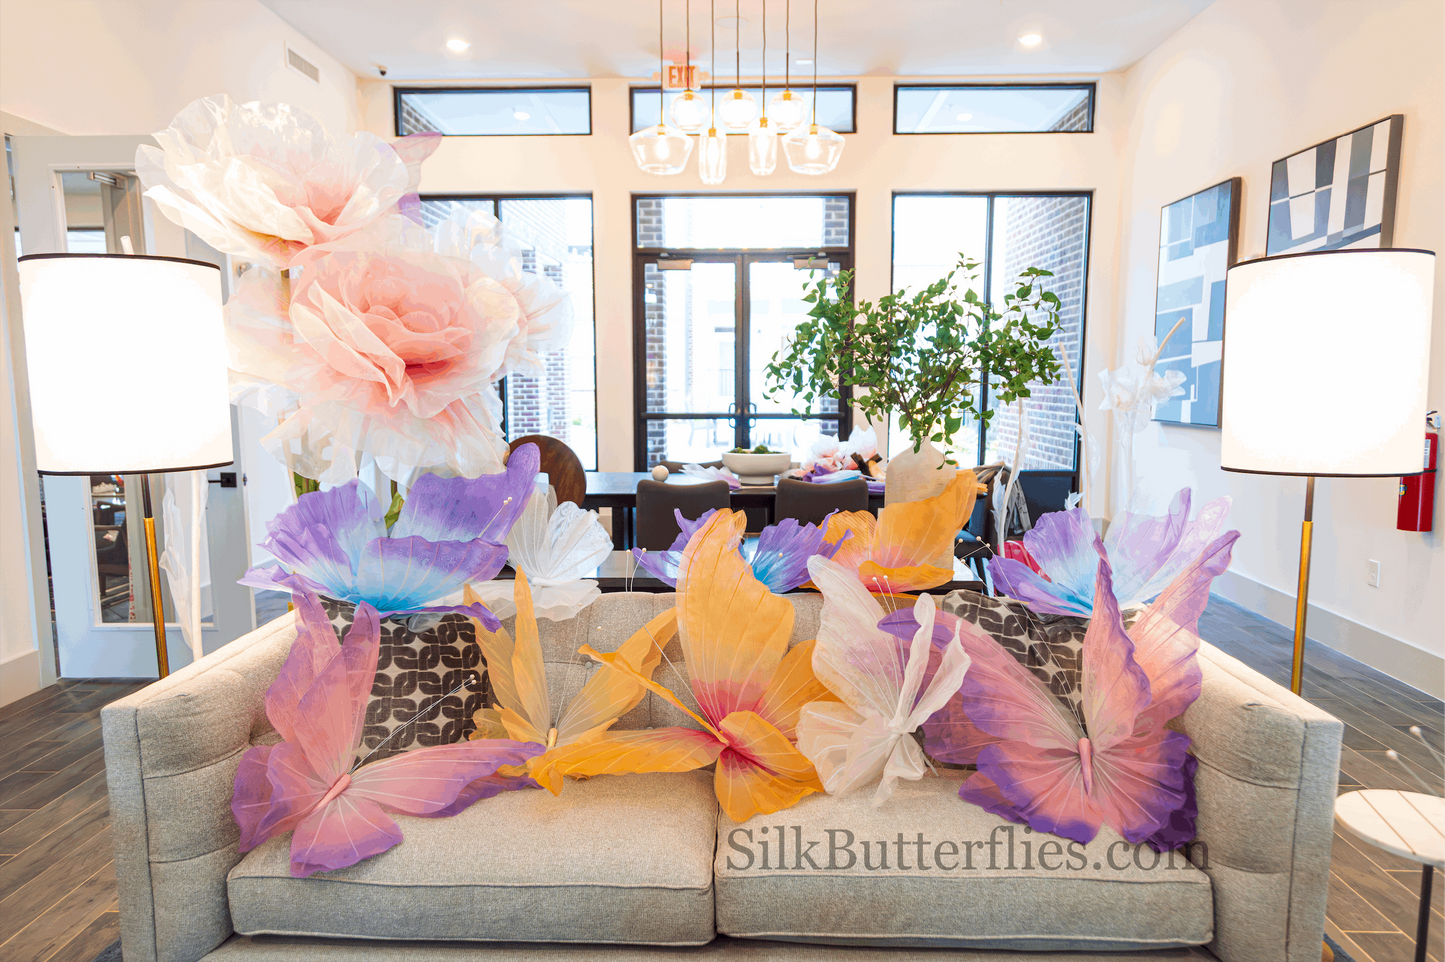 Butterflies for event decor